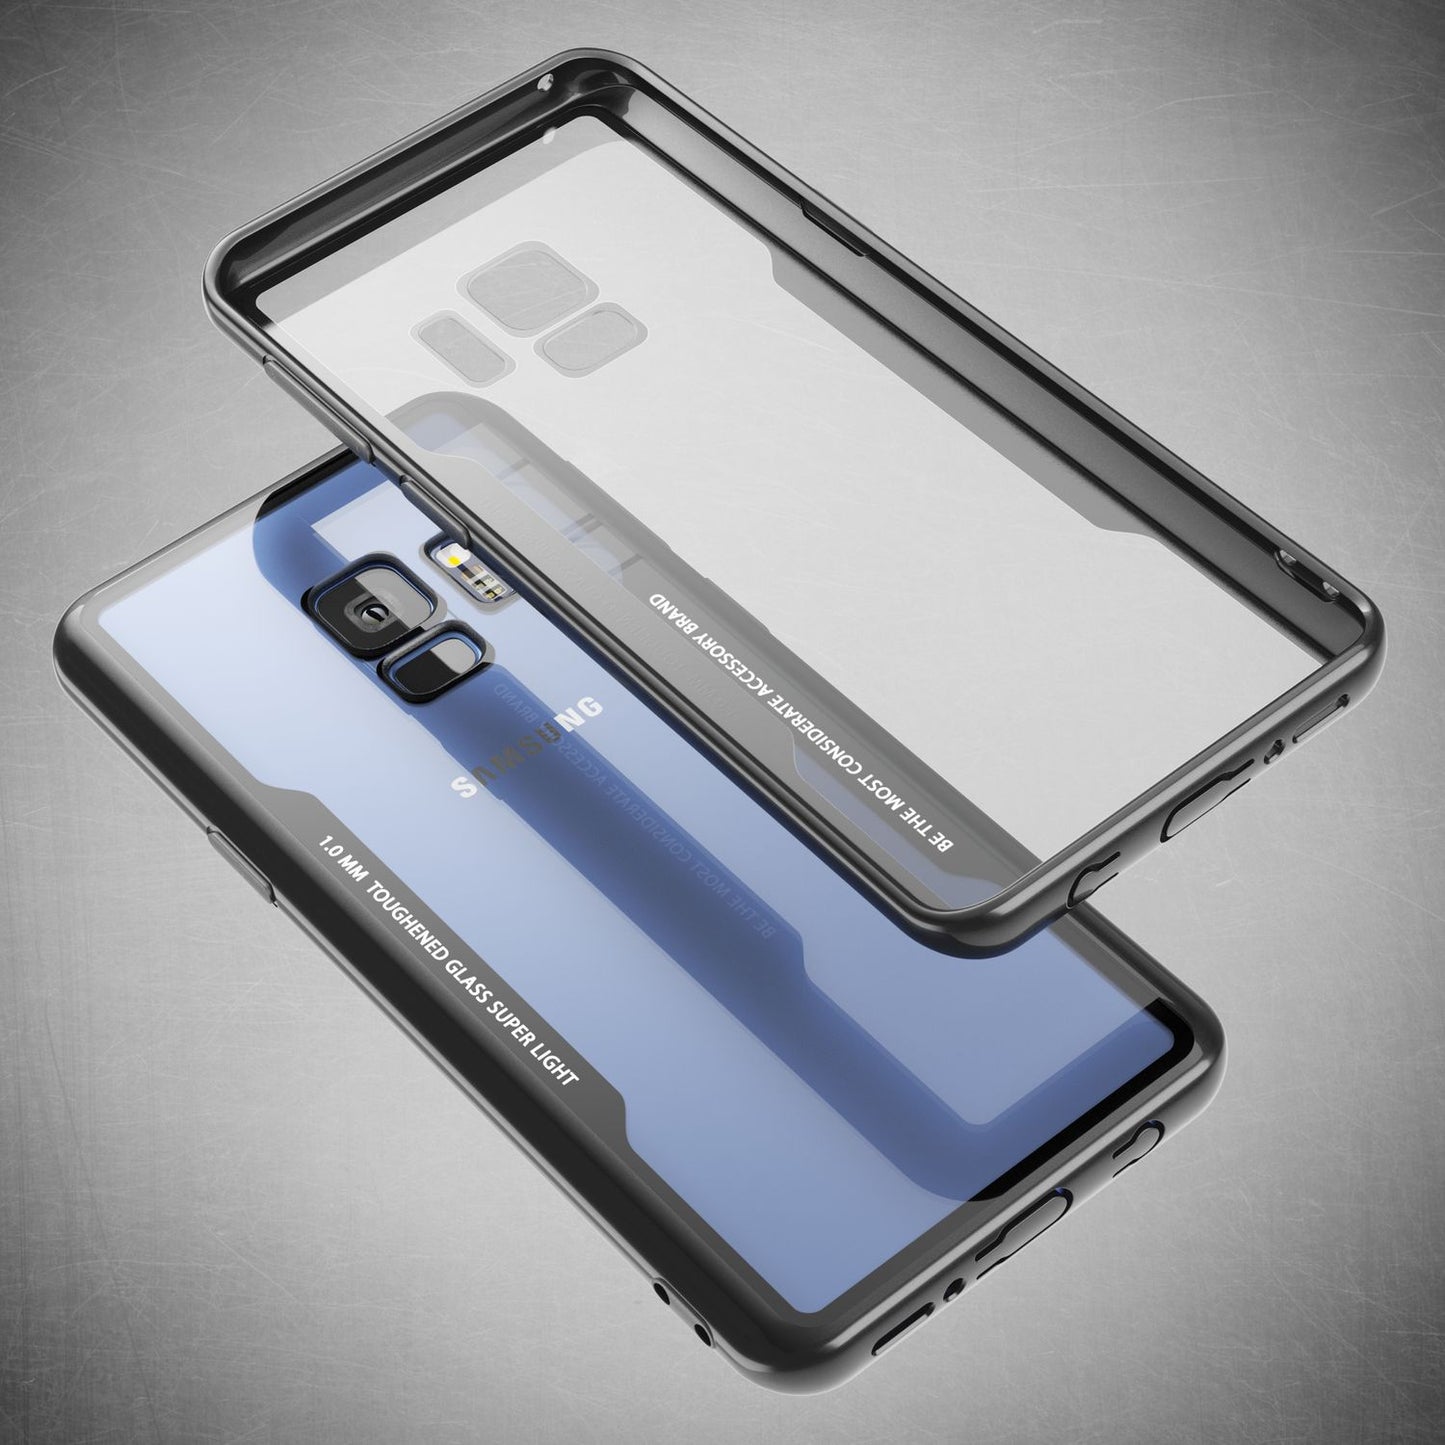 NALIA Hülle für Samsung Galaxy S9, Slim Handyhülle Cover Case Schutzhülle Bumper